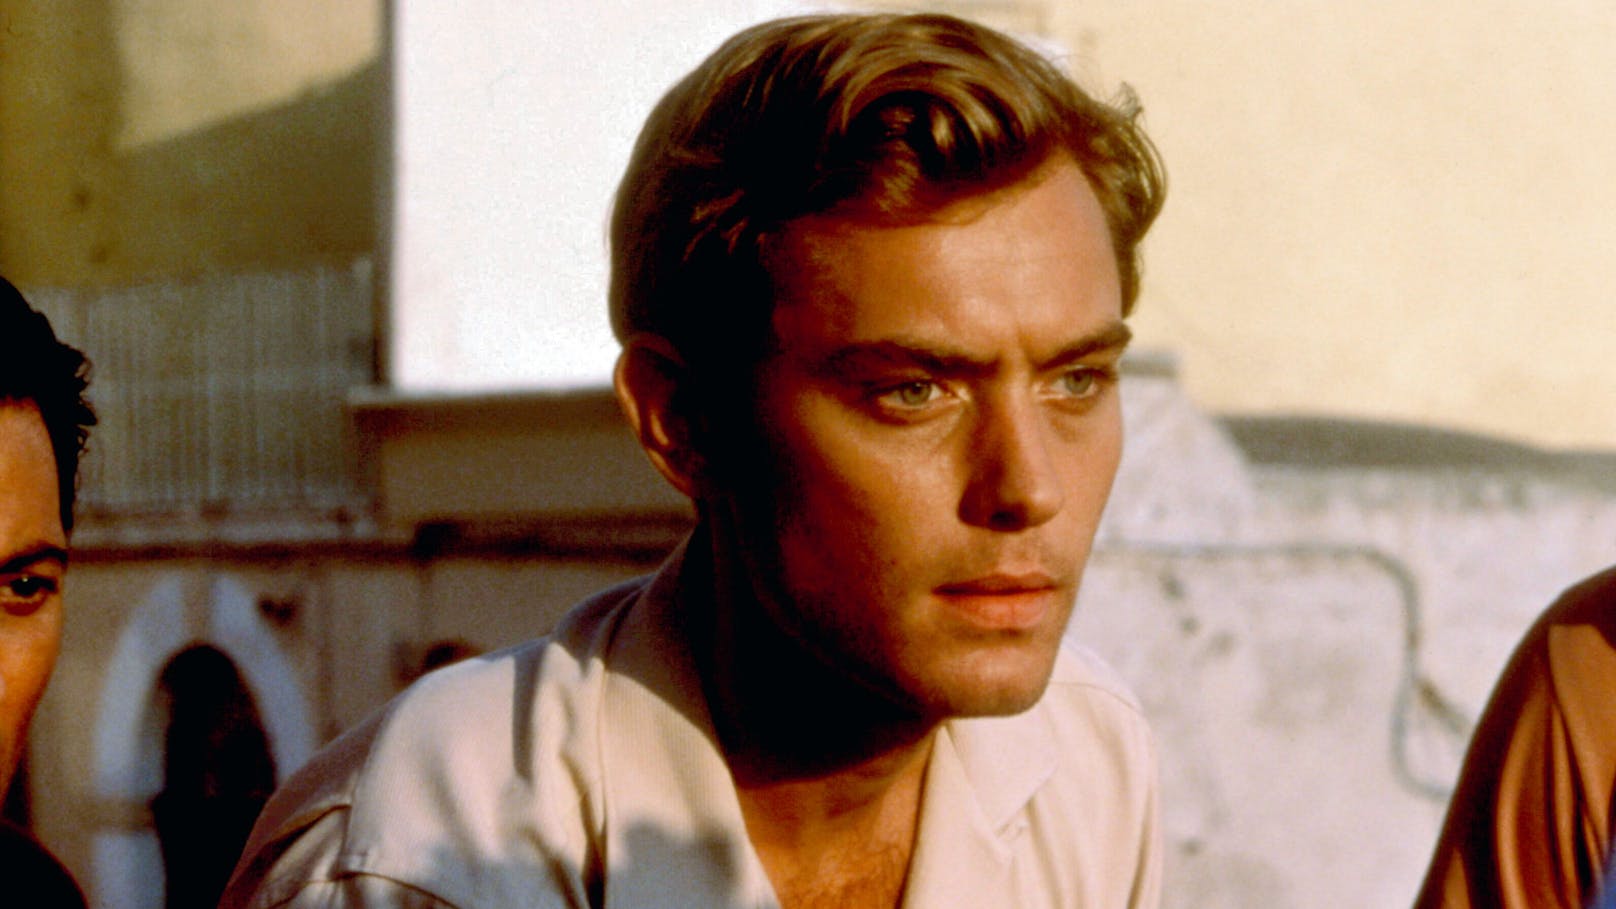 Jude Law 1999 in seiner Rolle als "Dickie" Greenleaf für den Film "Der talentierte Mr. Ripley".